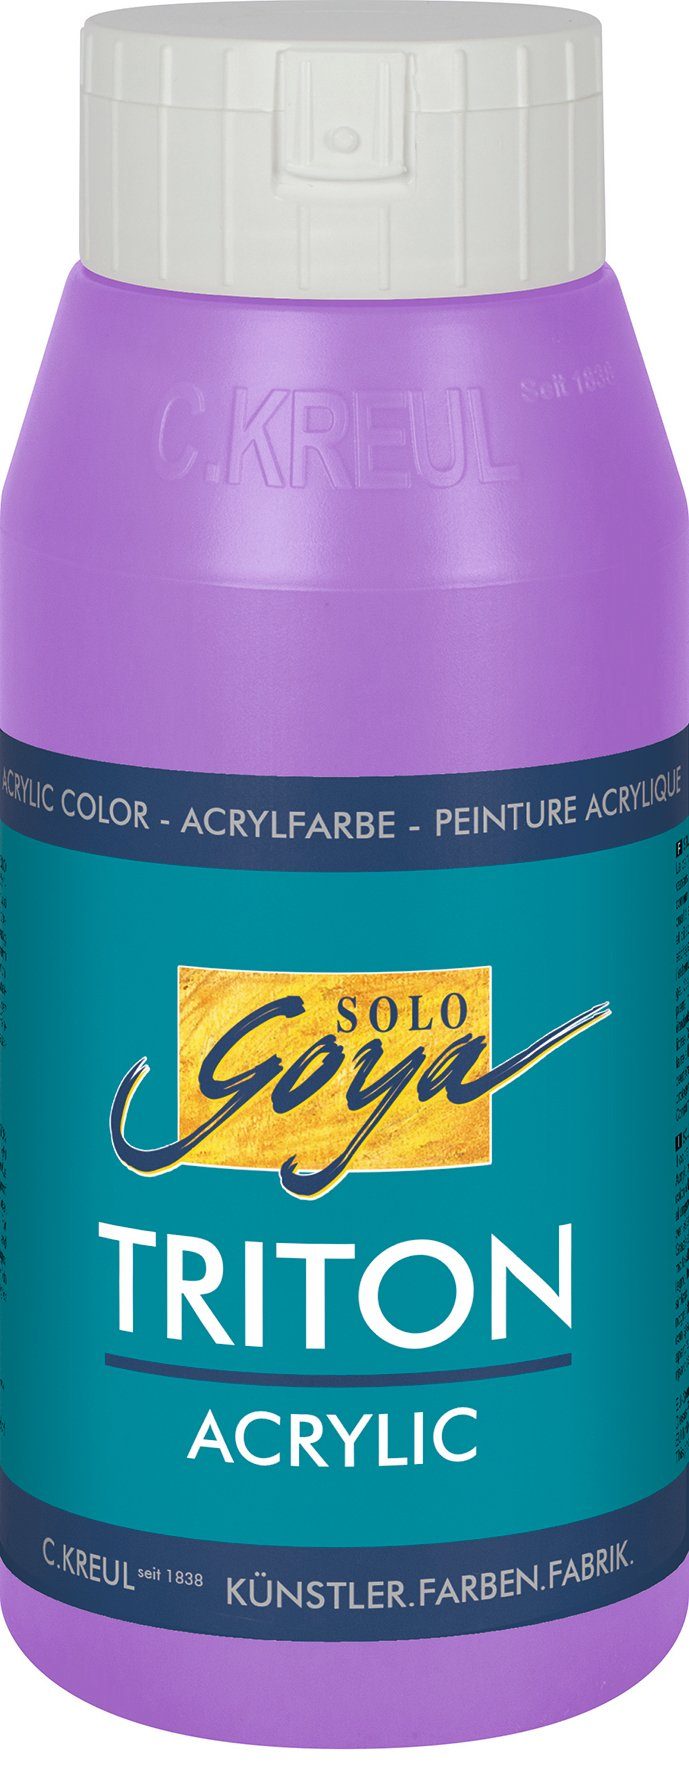 Solo Kreul Acrylfarbe 750 ml Acrylic, Goya Flieder Triton